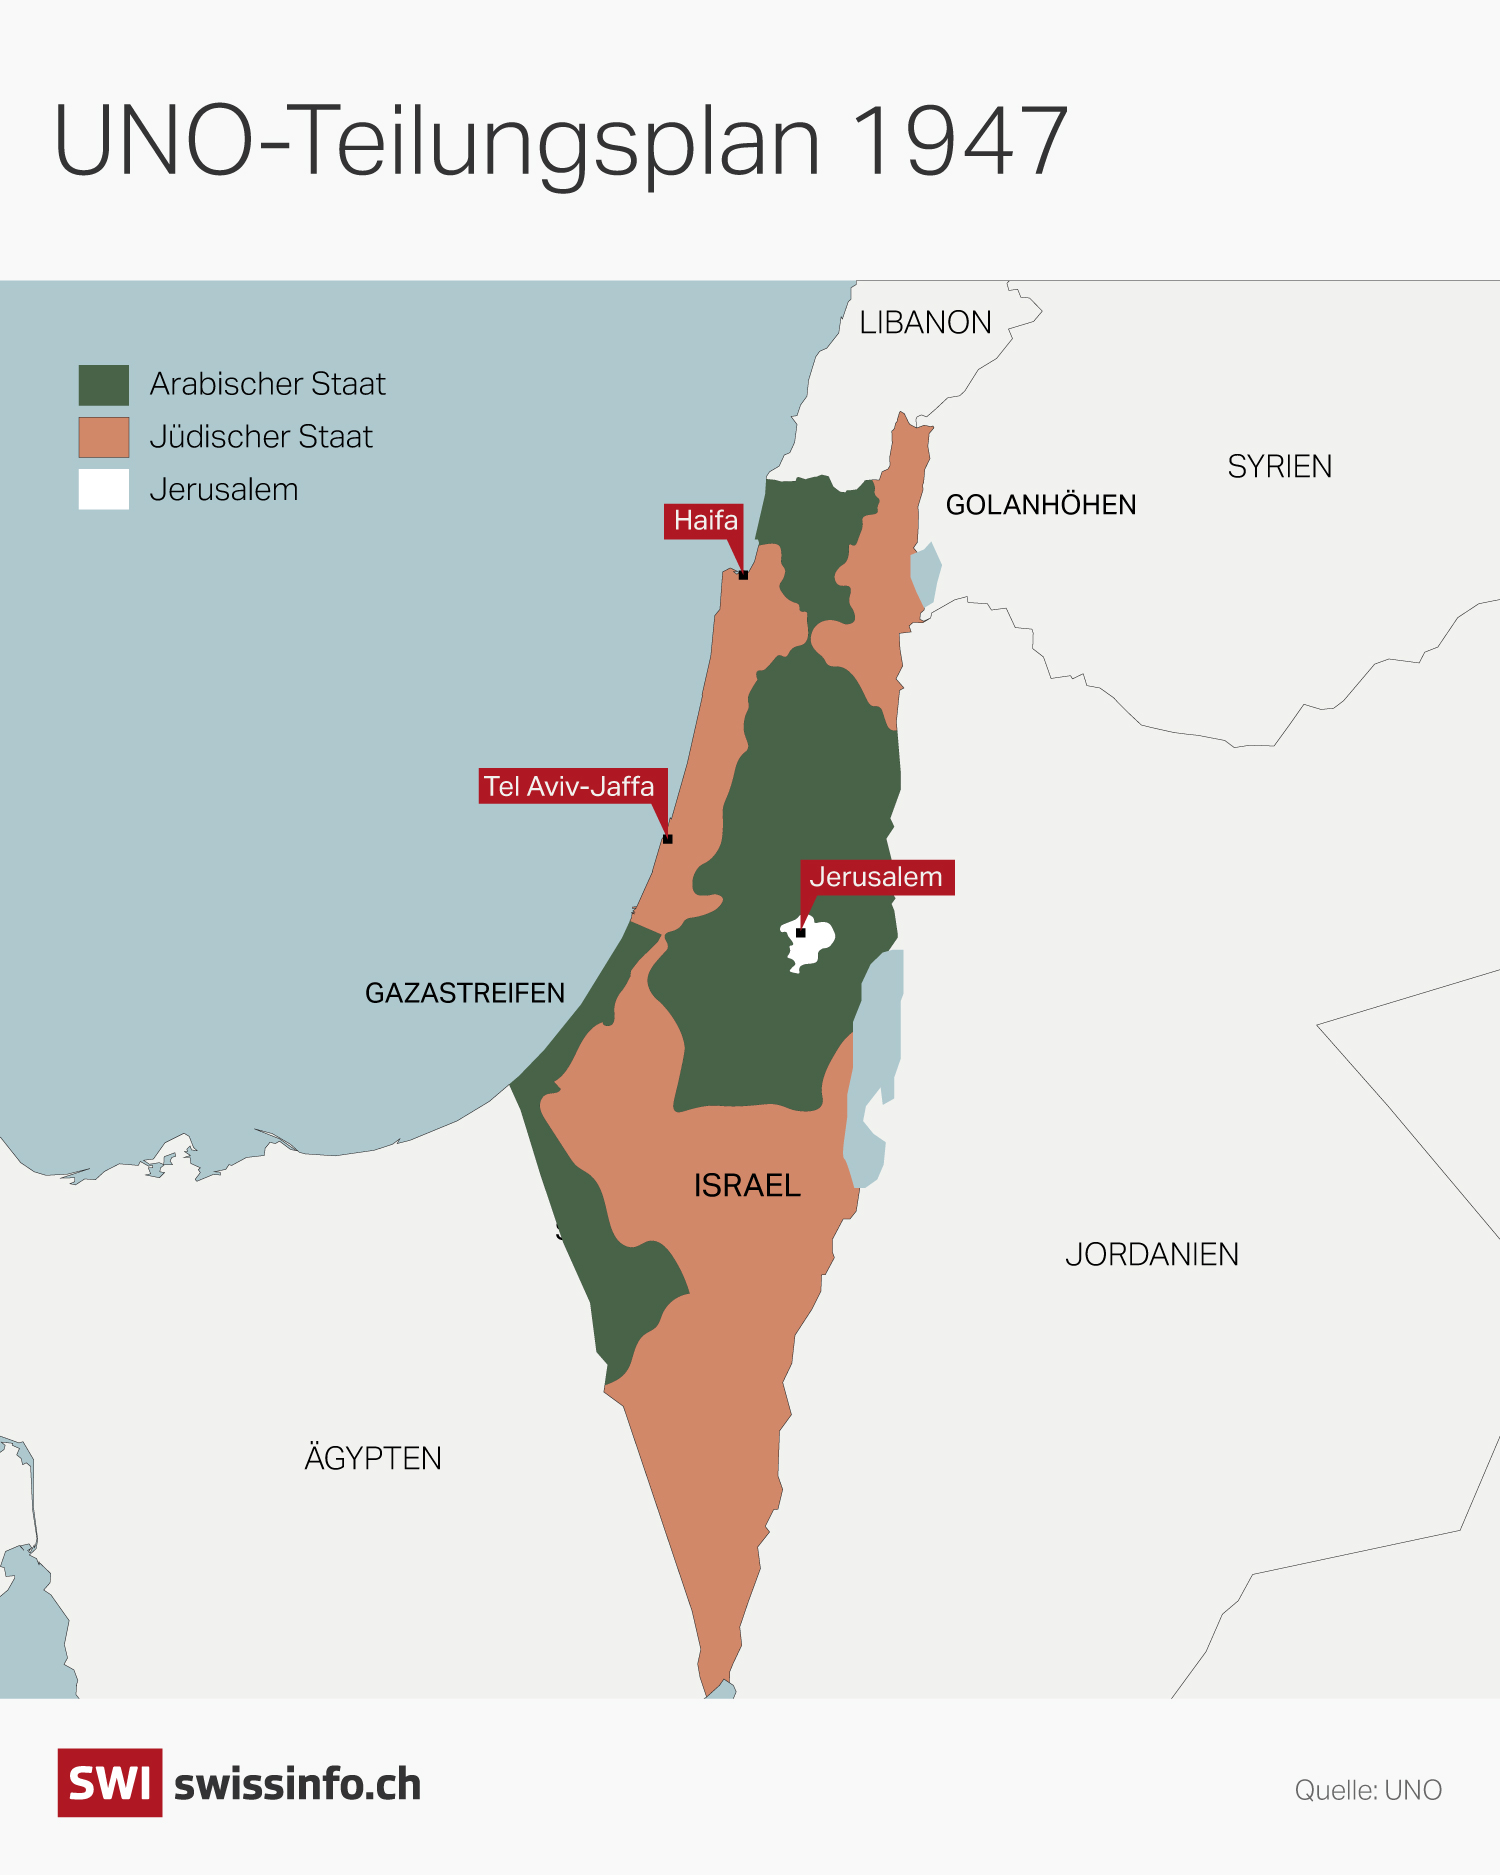 Grafik mit Karte von Israel mit der von der UNO vorgeschlagenen Teilung von Gebieten